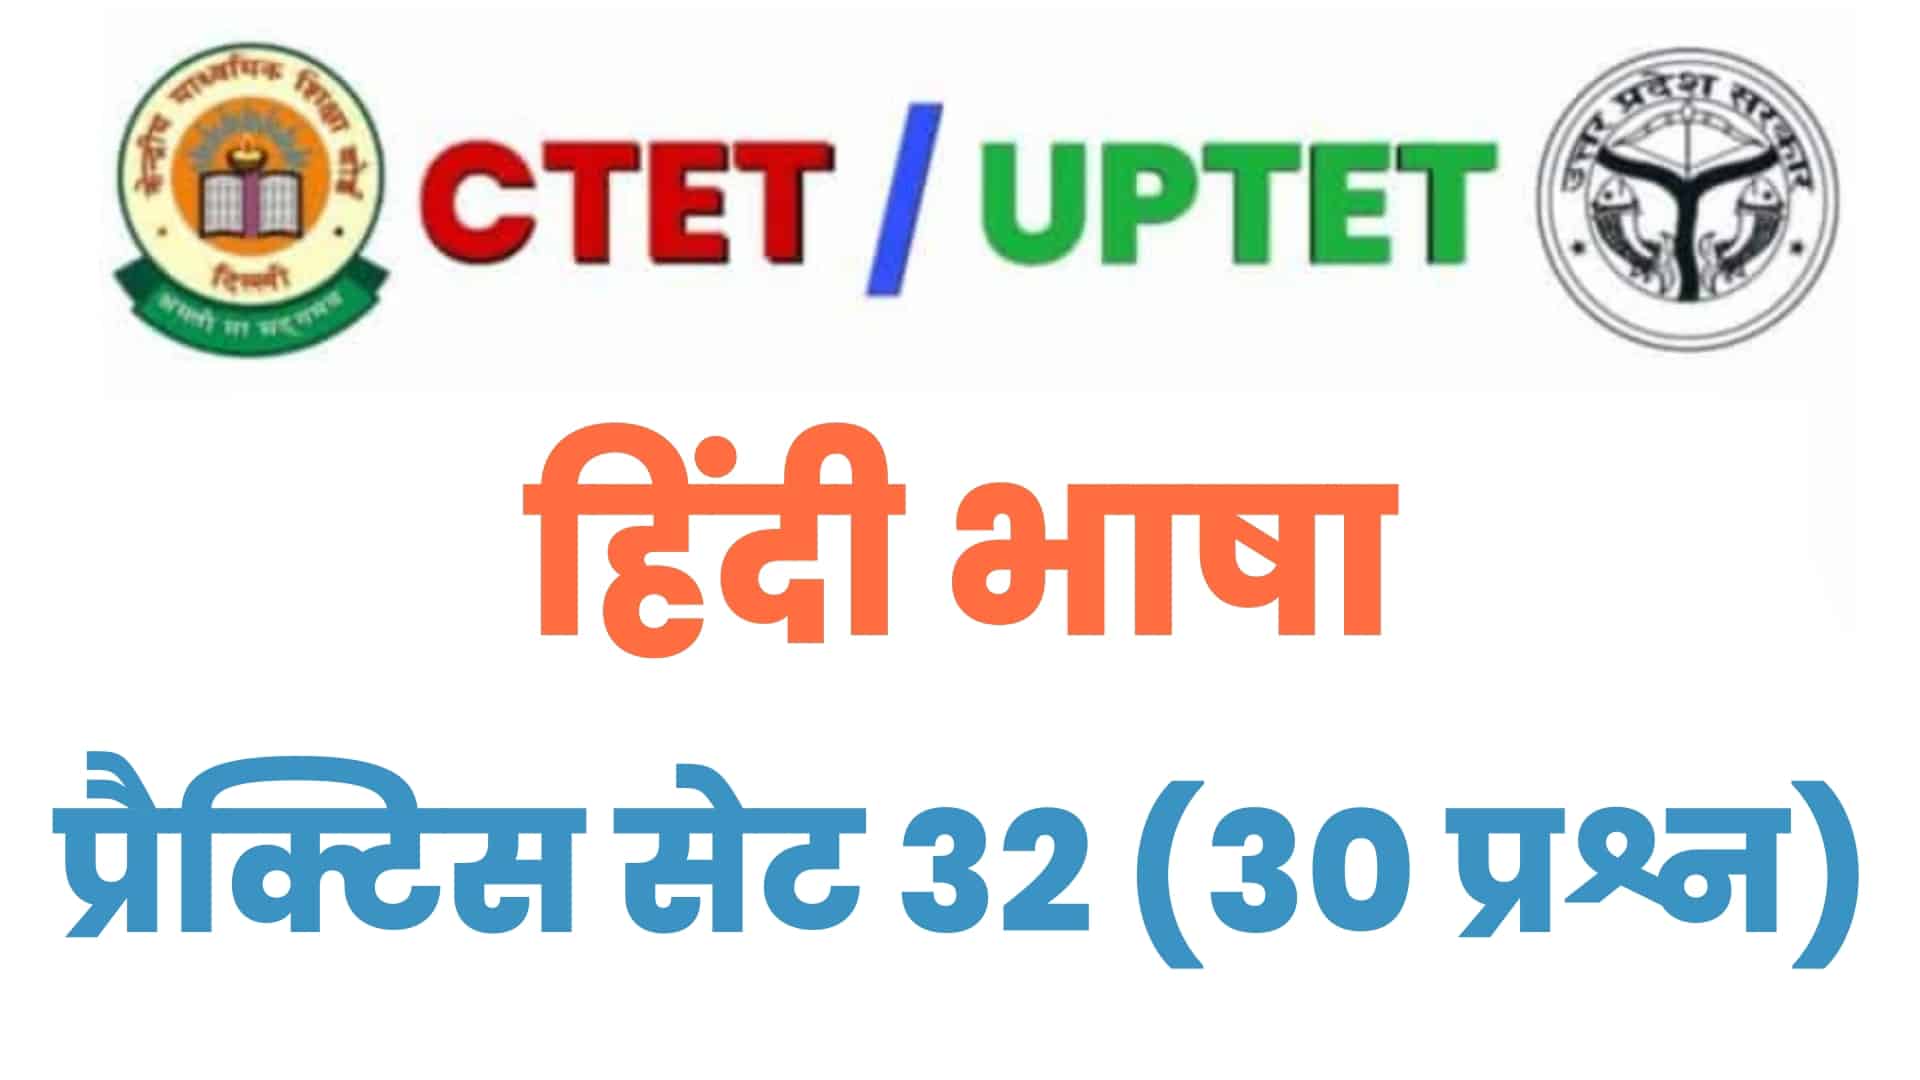 UPTET/CTET हिंदी भाषा प्रैक्टिस सेट 32 : विगत वर्षों के इन 30 महत्वपूर्ण प्रश्नों पर डालें एक नज़र